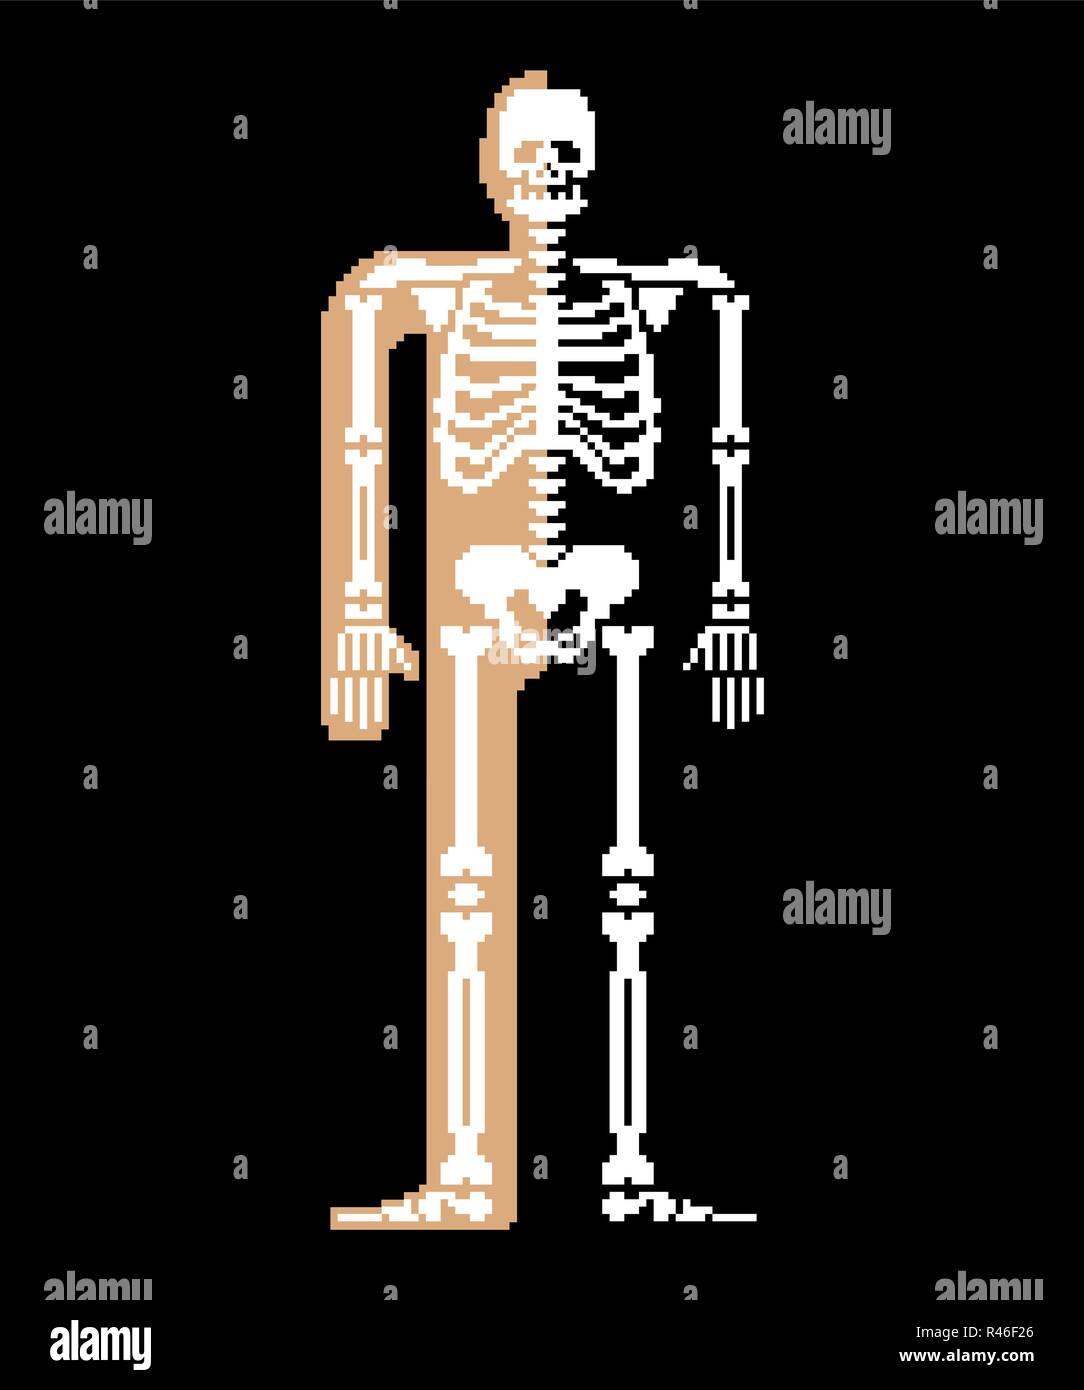 Skelett pixel Art Schädel und Knochen Anatomie 8 Bit. Pixelate Beckenknochen und Rippen. Wirbelsäule und Bandscheiben. Menschliche Knochen System 16 Bit. Alte spiel computer grap Stock Vektor